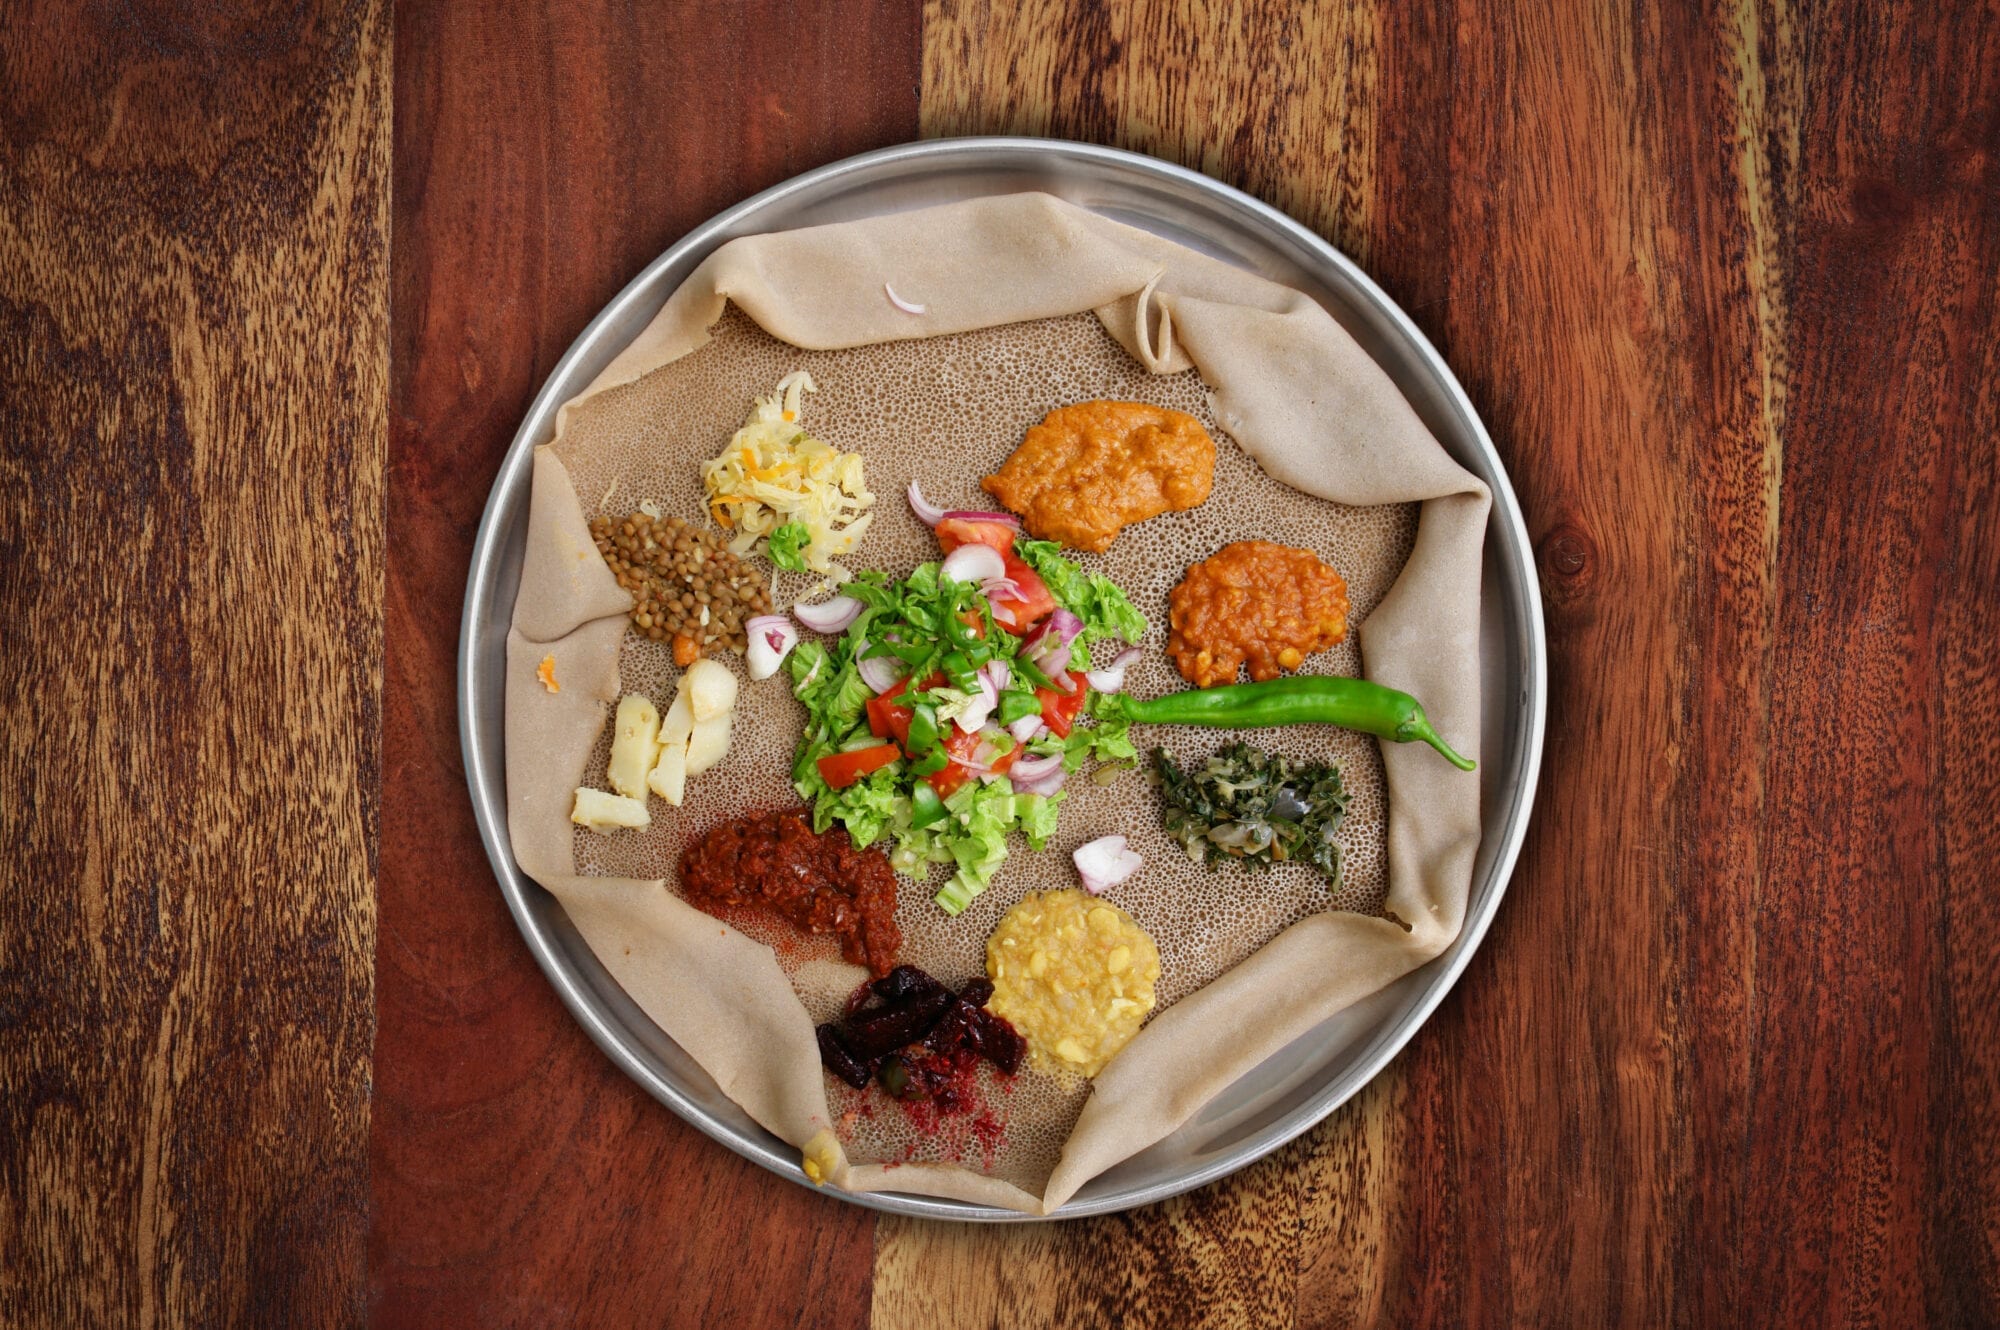 你可以在任何厄立特里亞或埃塞俄比亞餐廳，找到這款典型素菜拼盤。拼盤由多款燉豆和蔬菜組成，放在injera（酸麵餅）一併享用。 © narvikk